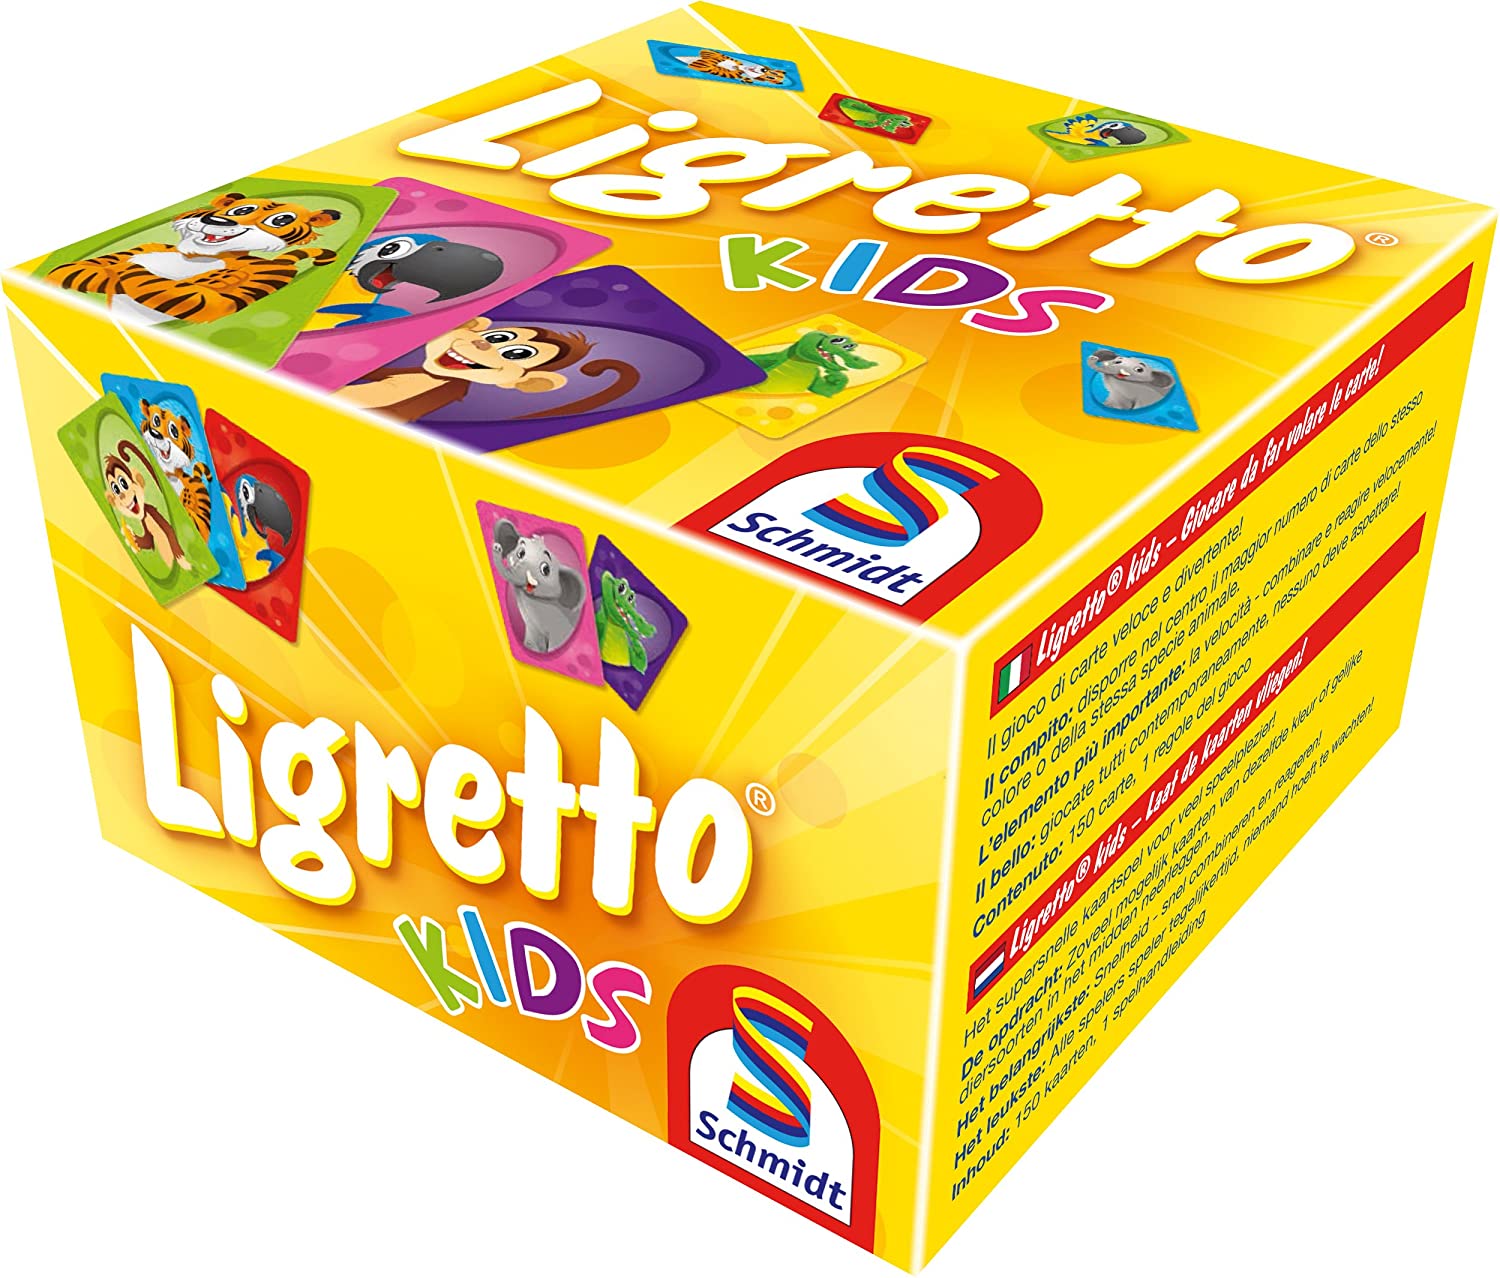 Schrijfmachine tijdschrift flauw Schmidt Spiele 01403 Ligretto Kids Card Game – TopToy